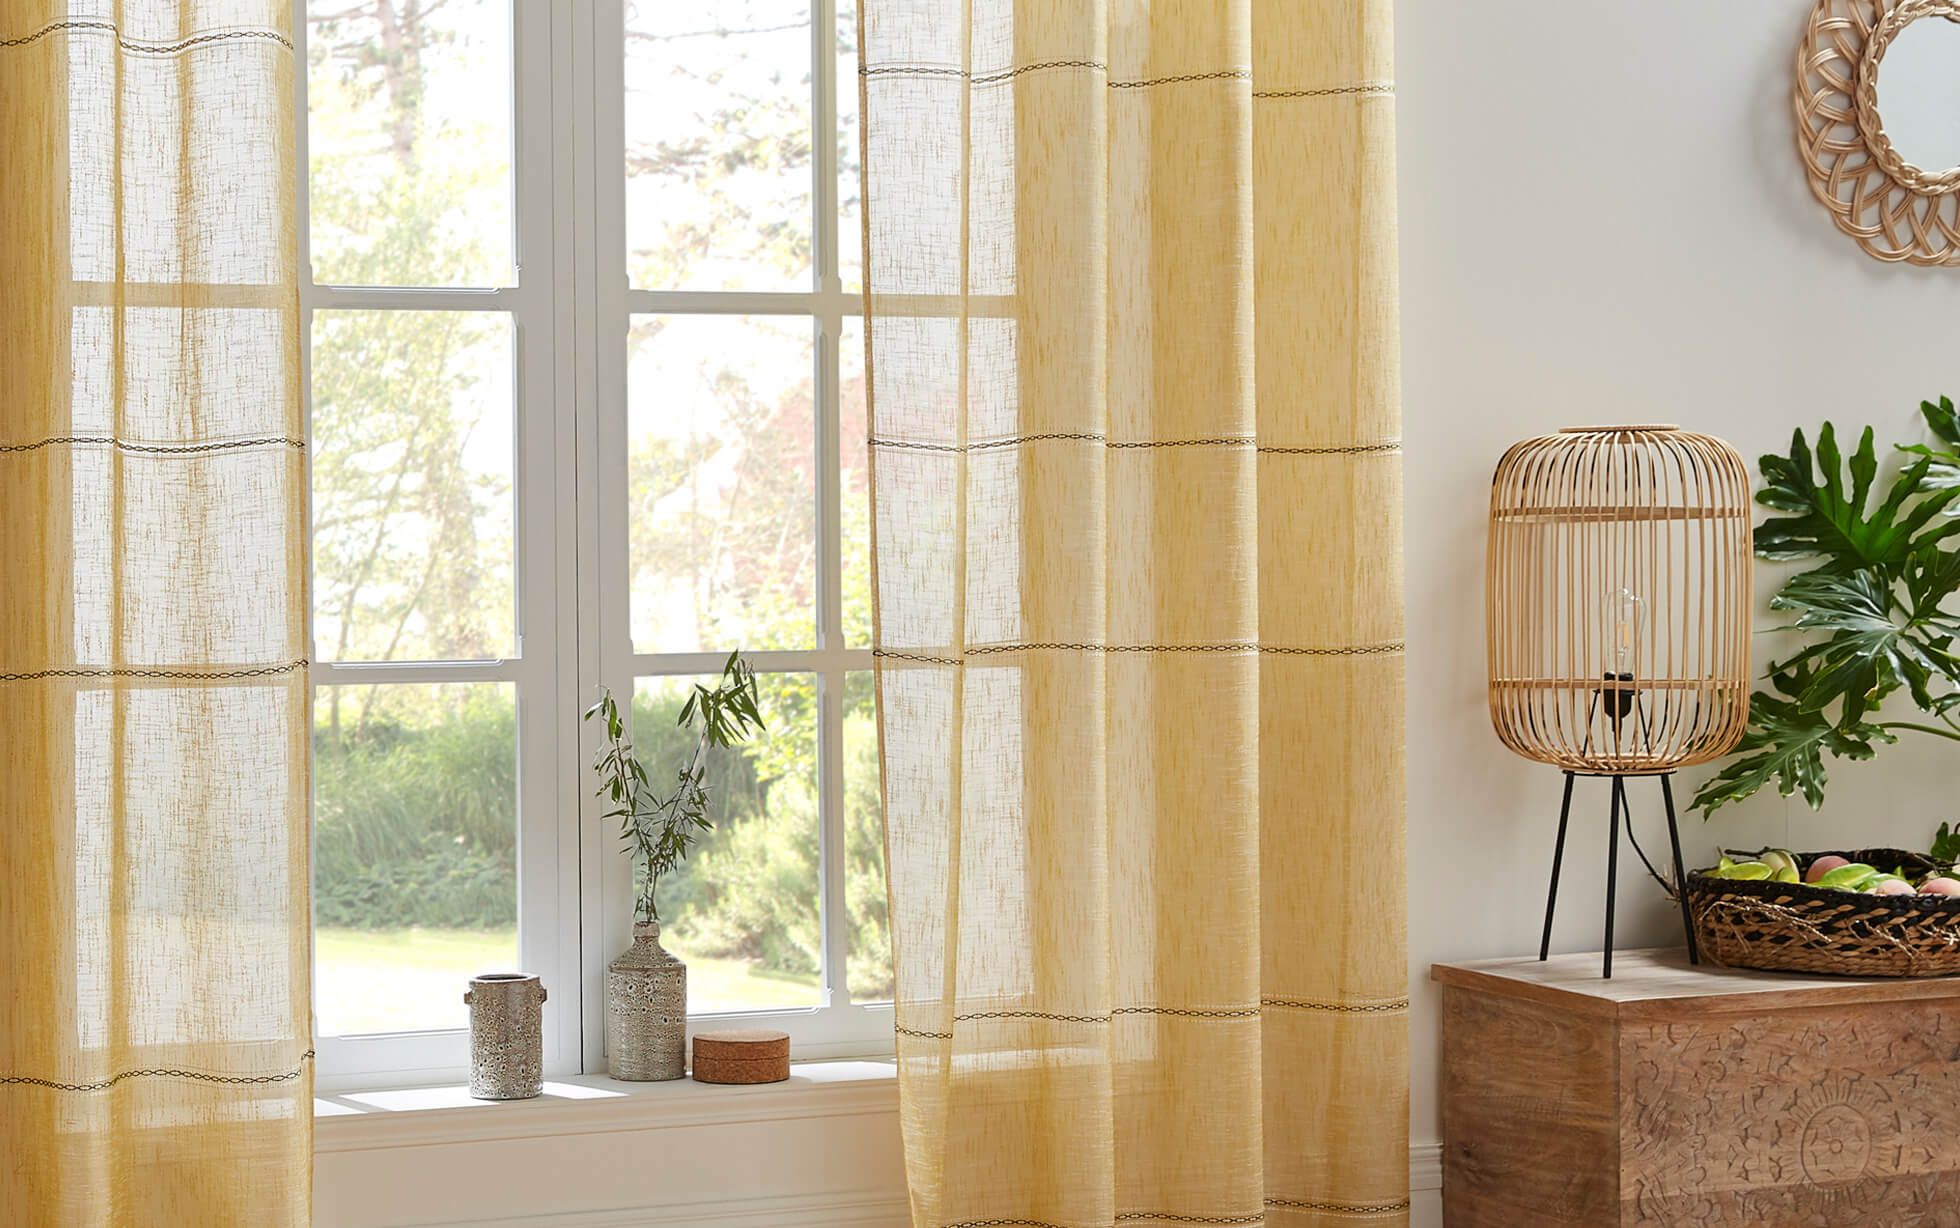 Mejores consejos para elegir los colores de tus cortinas esta primavera